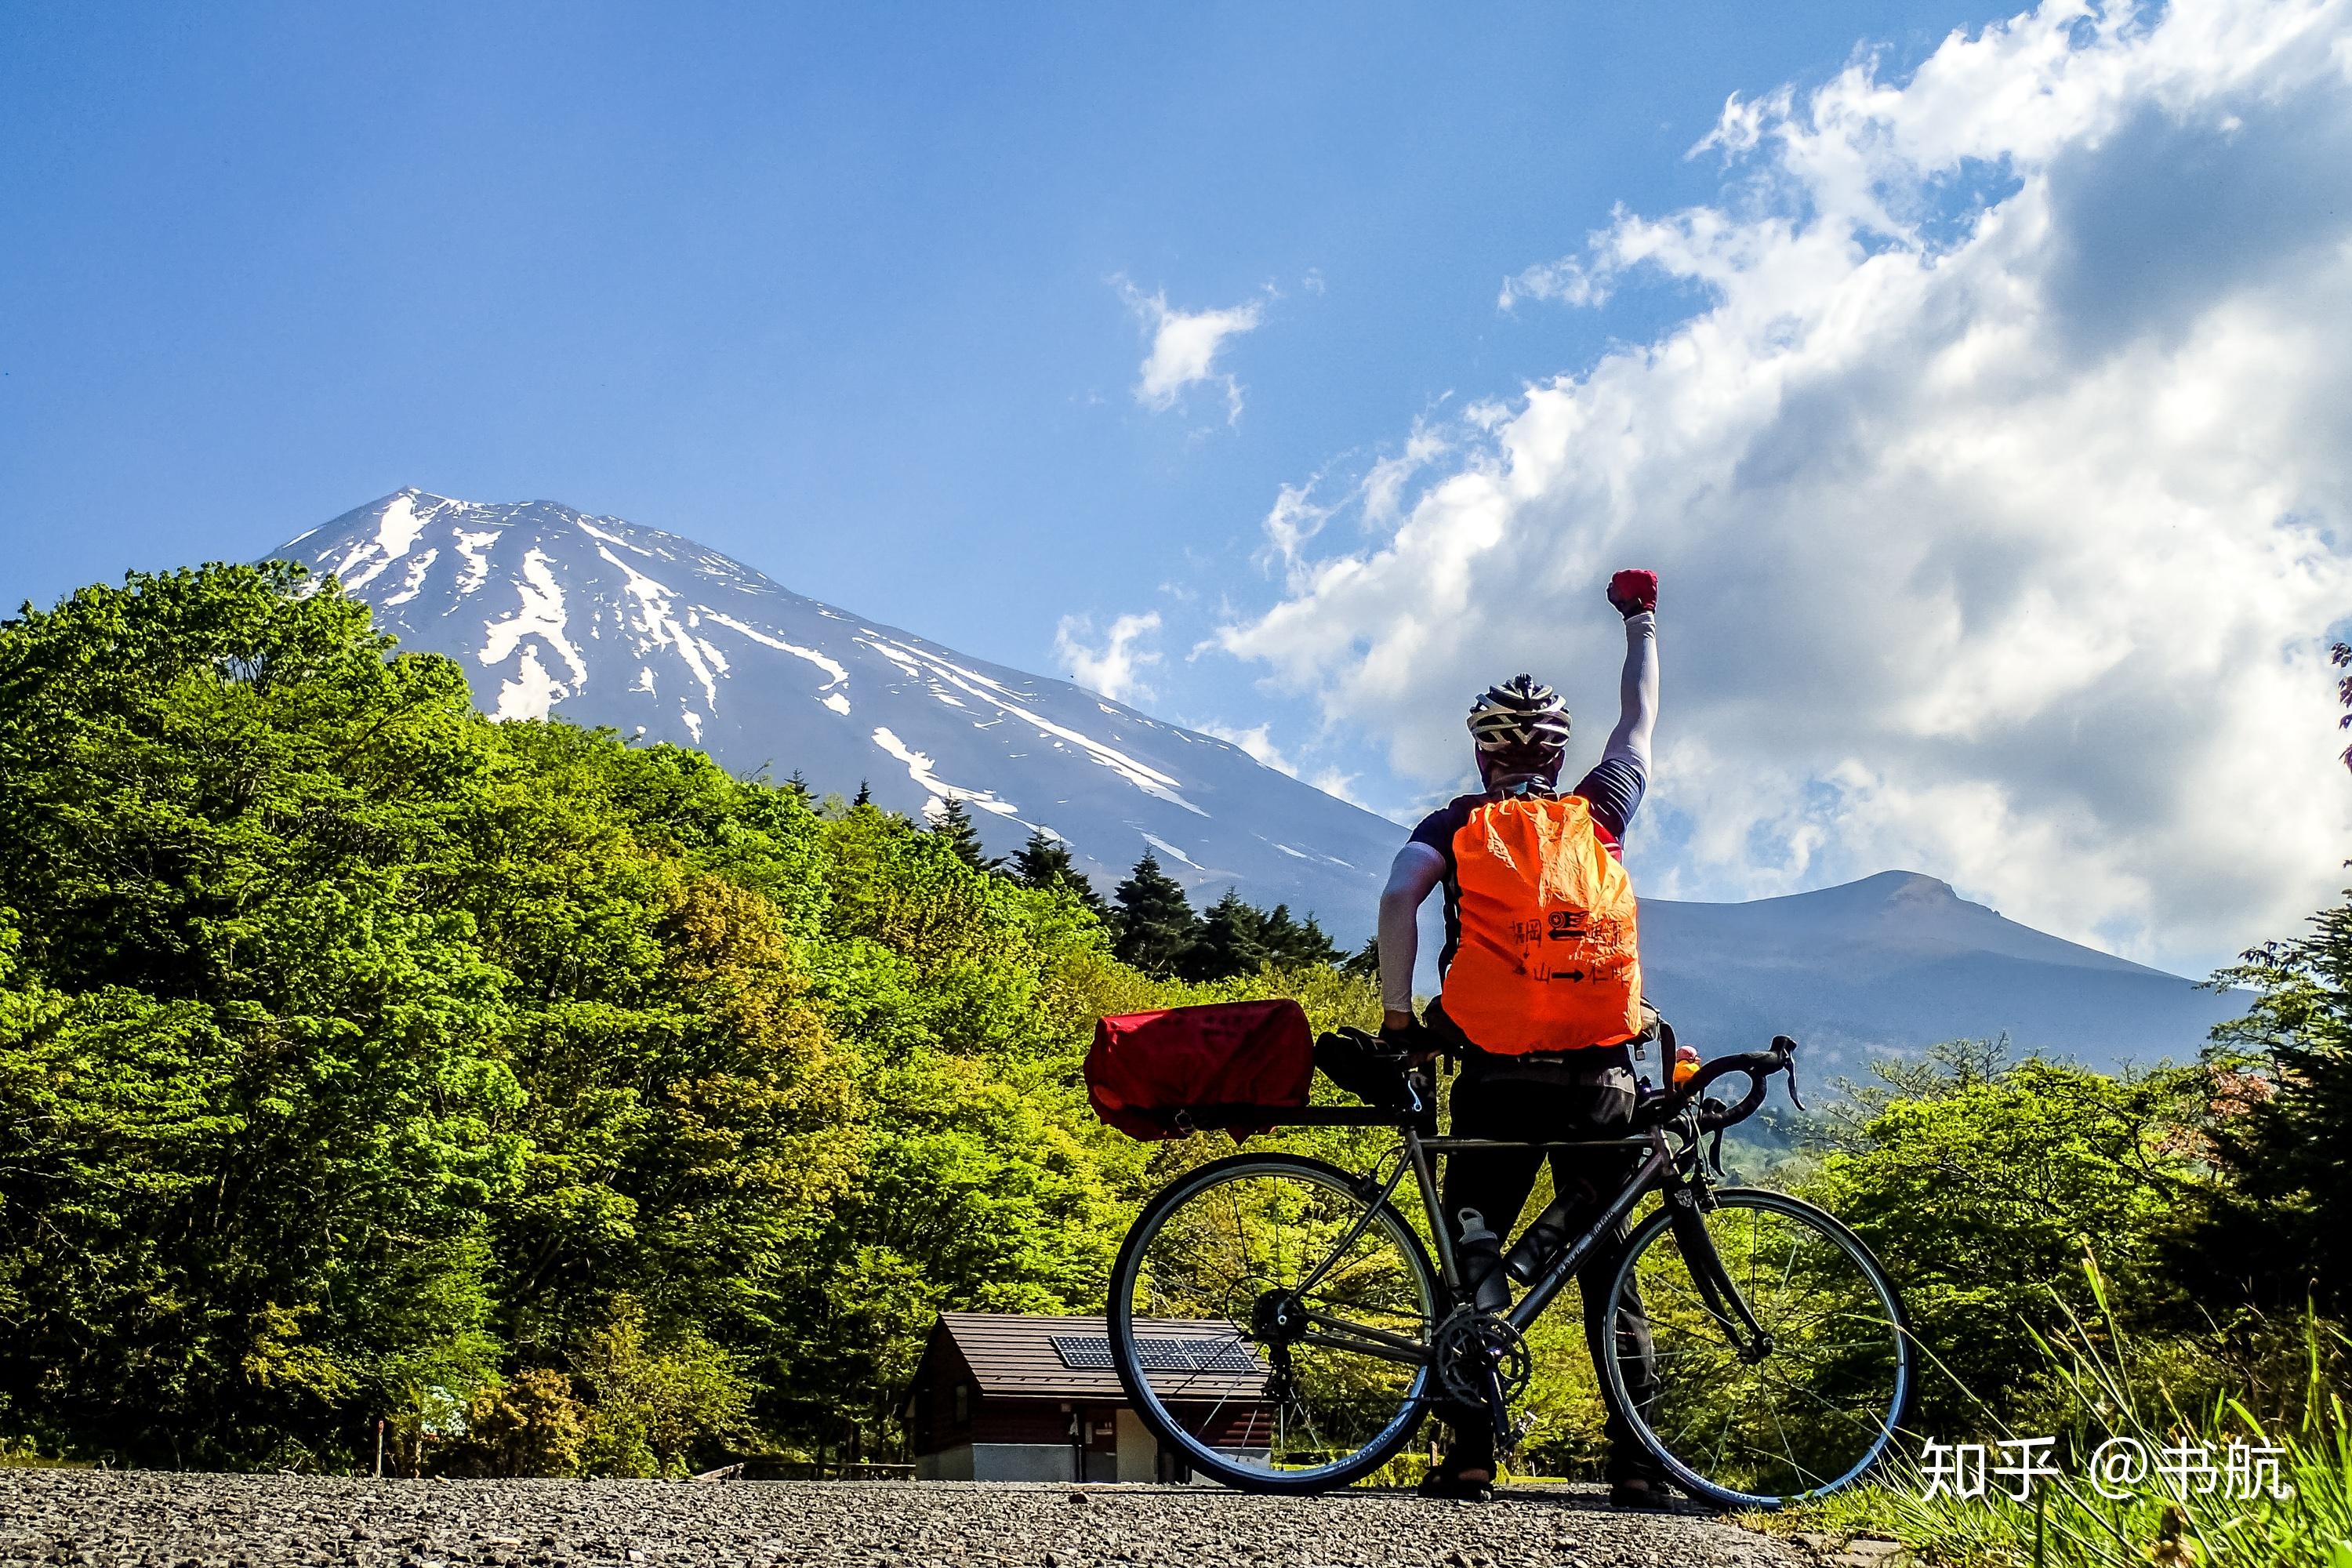 为什么骑行是环游世界最省钱的方式?|旅行知识|单车旅行|国外骑游 - 美骑网|Biketo.com